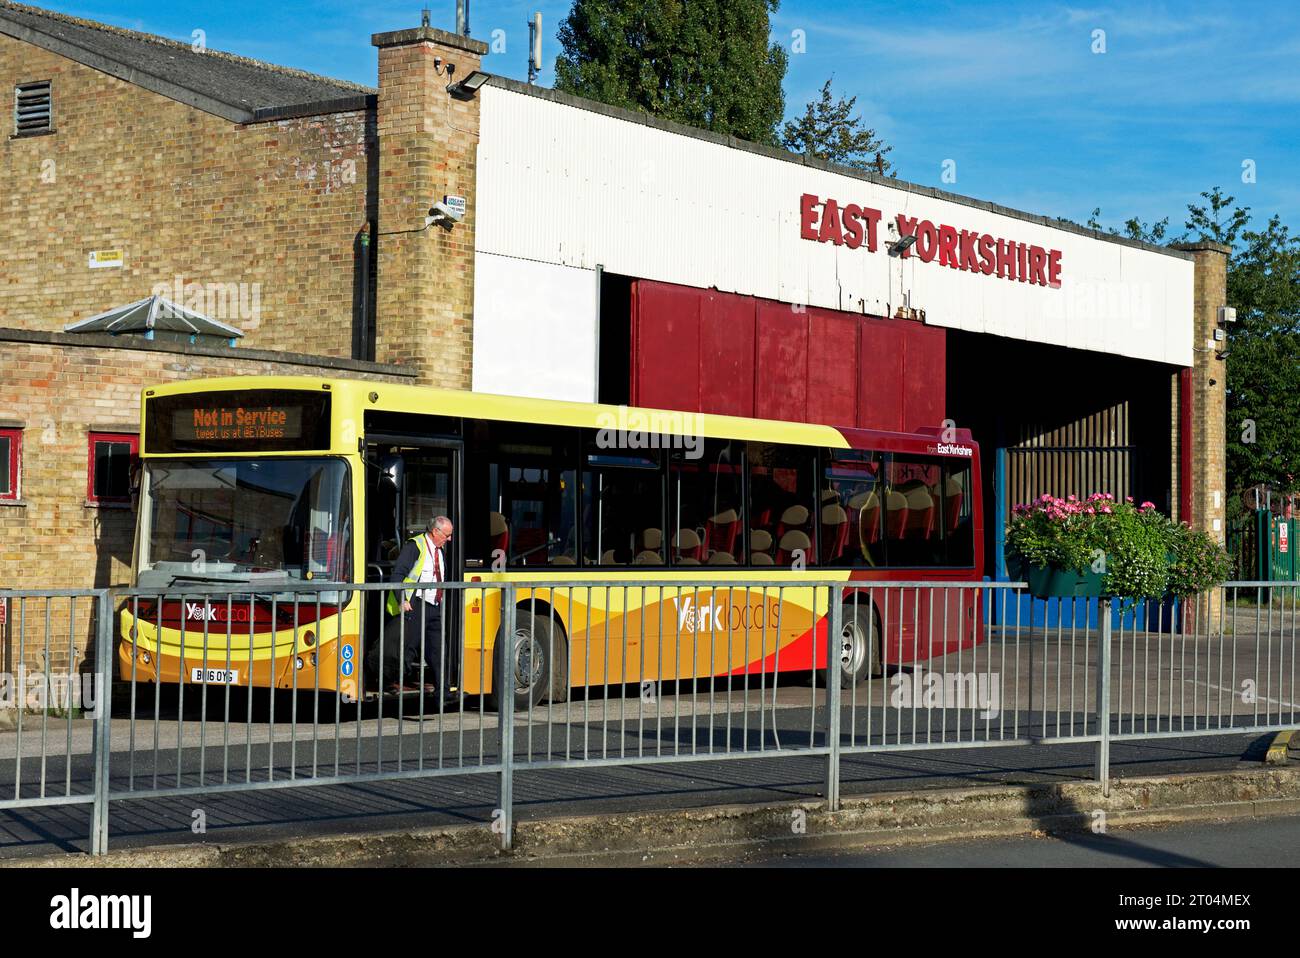 Pickering bus station, East Yorkshire, England UK Stock Photo